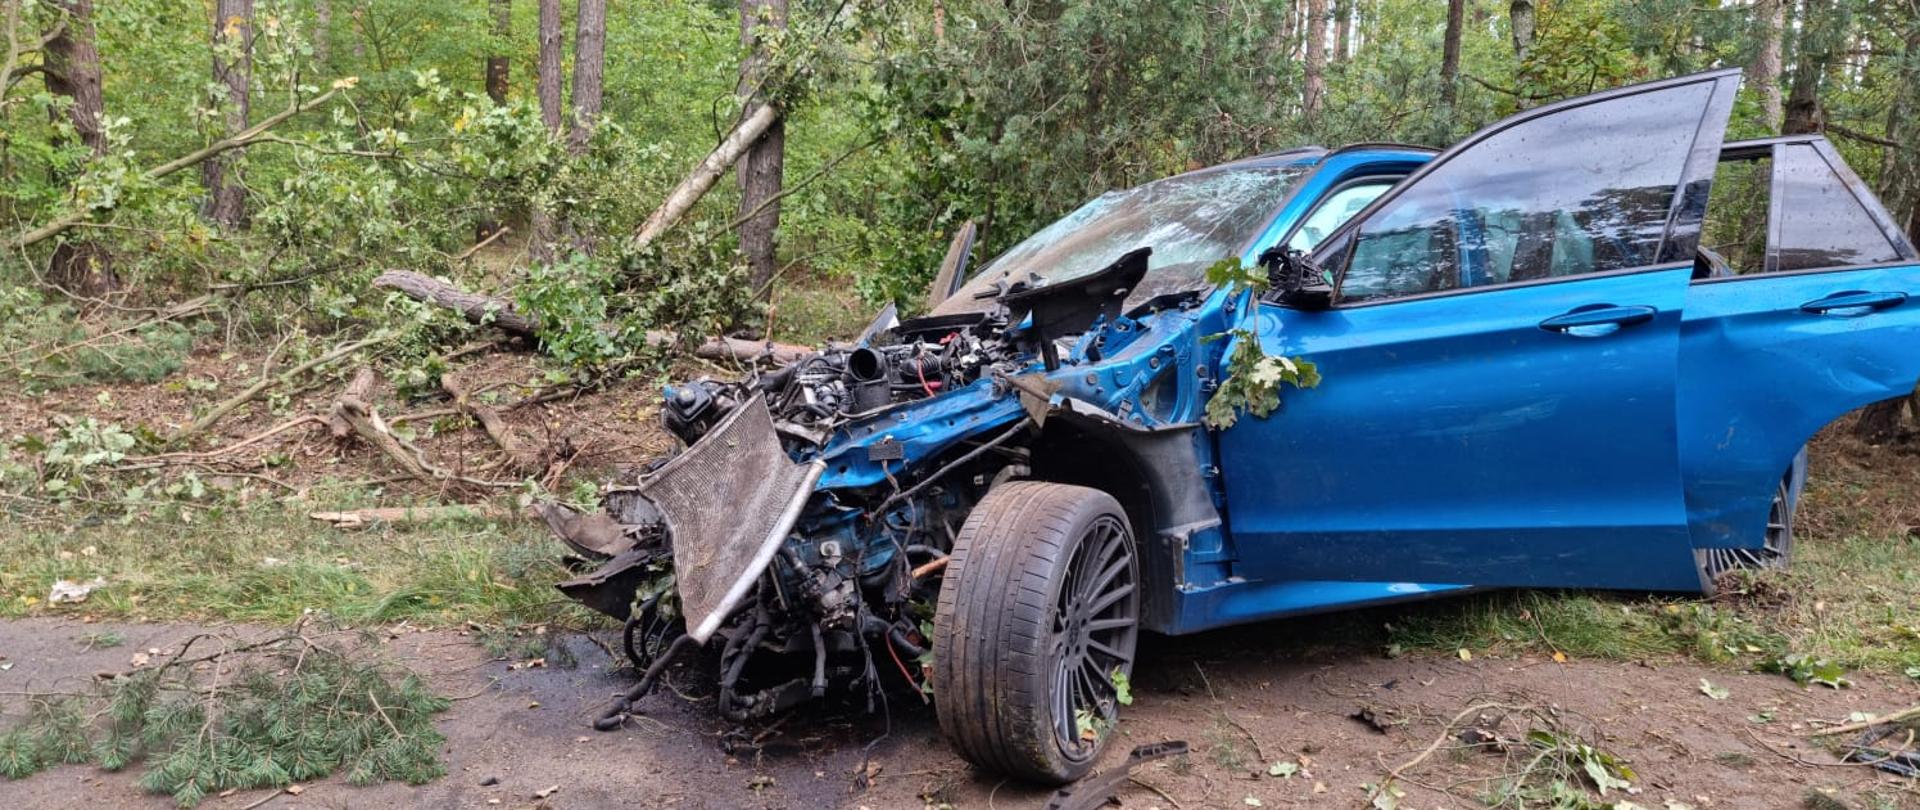 Widać uszkodzony niebieski samochód od strony kierowcy, drzwi otwarte, za nim kilka drzew